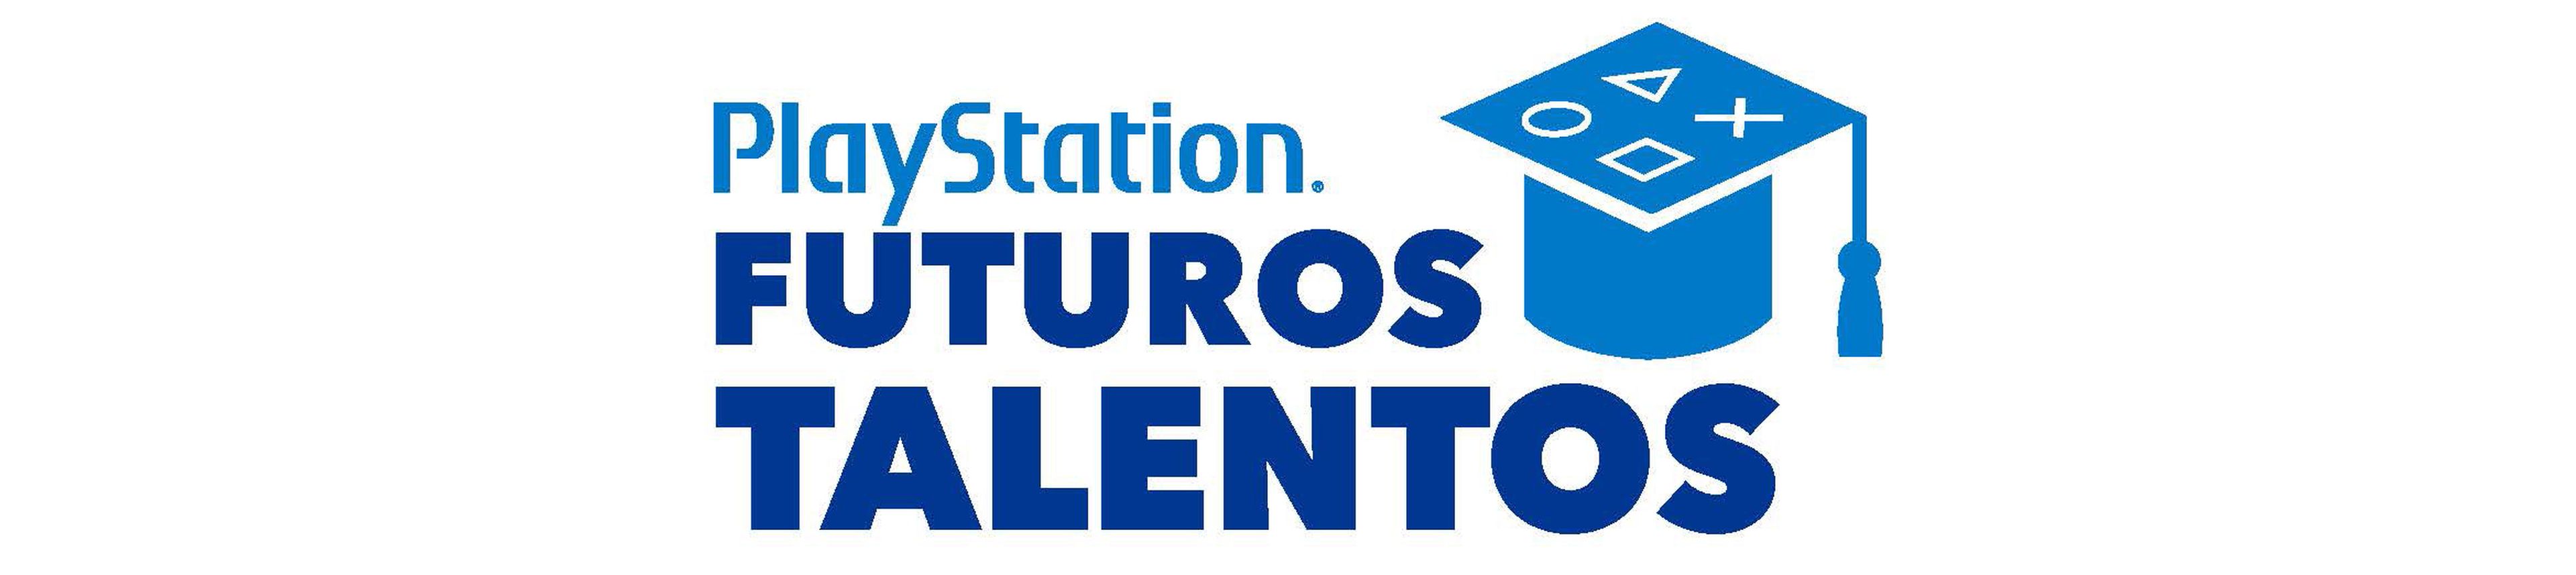 PlayStation Futuros Talentos: iniciativa de Sony España en apoyo a la formación en secundaria